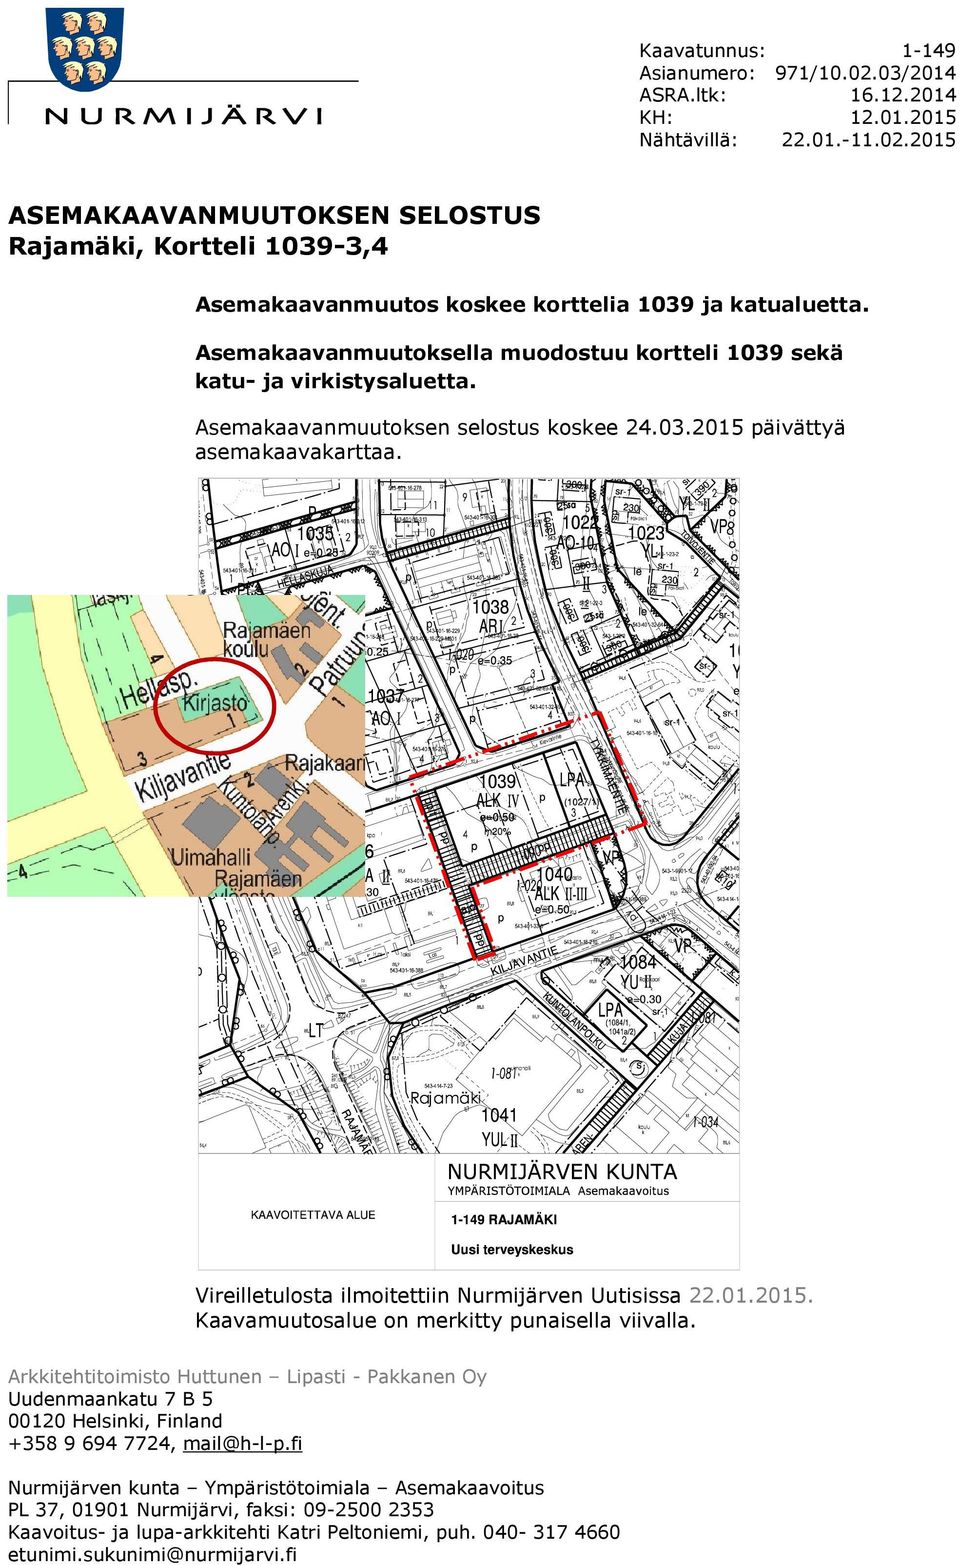 Vireilletulosta ilmoitettiin Nurmijärven Uutisissa 22.01.2015. Kaavamuutosalue on merkitty punaisella viivalla.